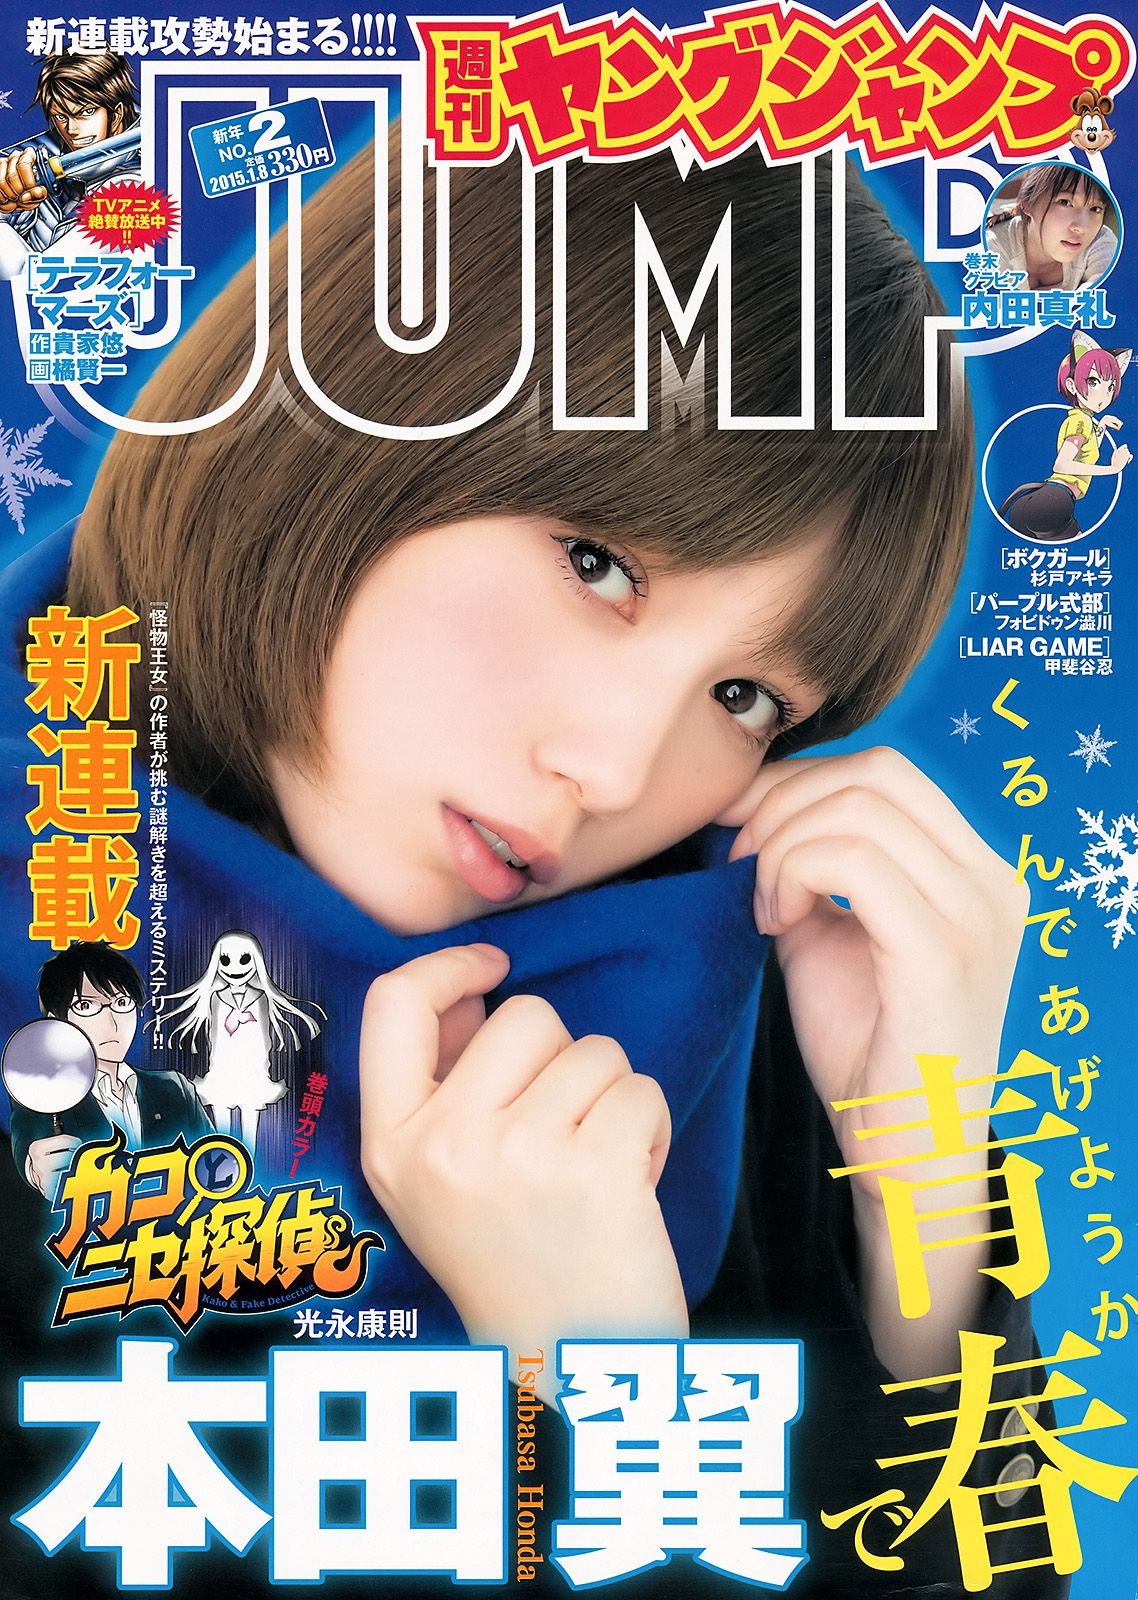 本田翼 内田真礼 [Weekly Young Jump] 2015年No.02 写真杂志 